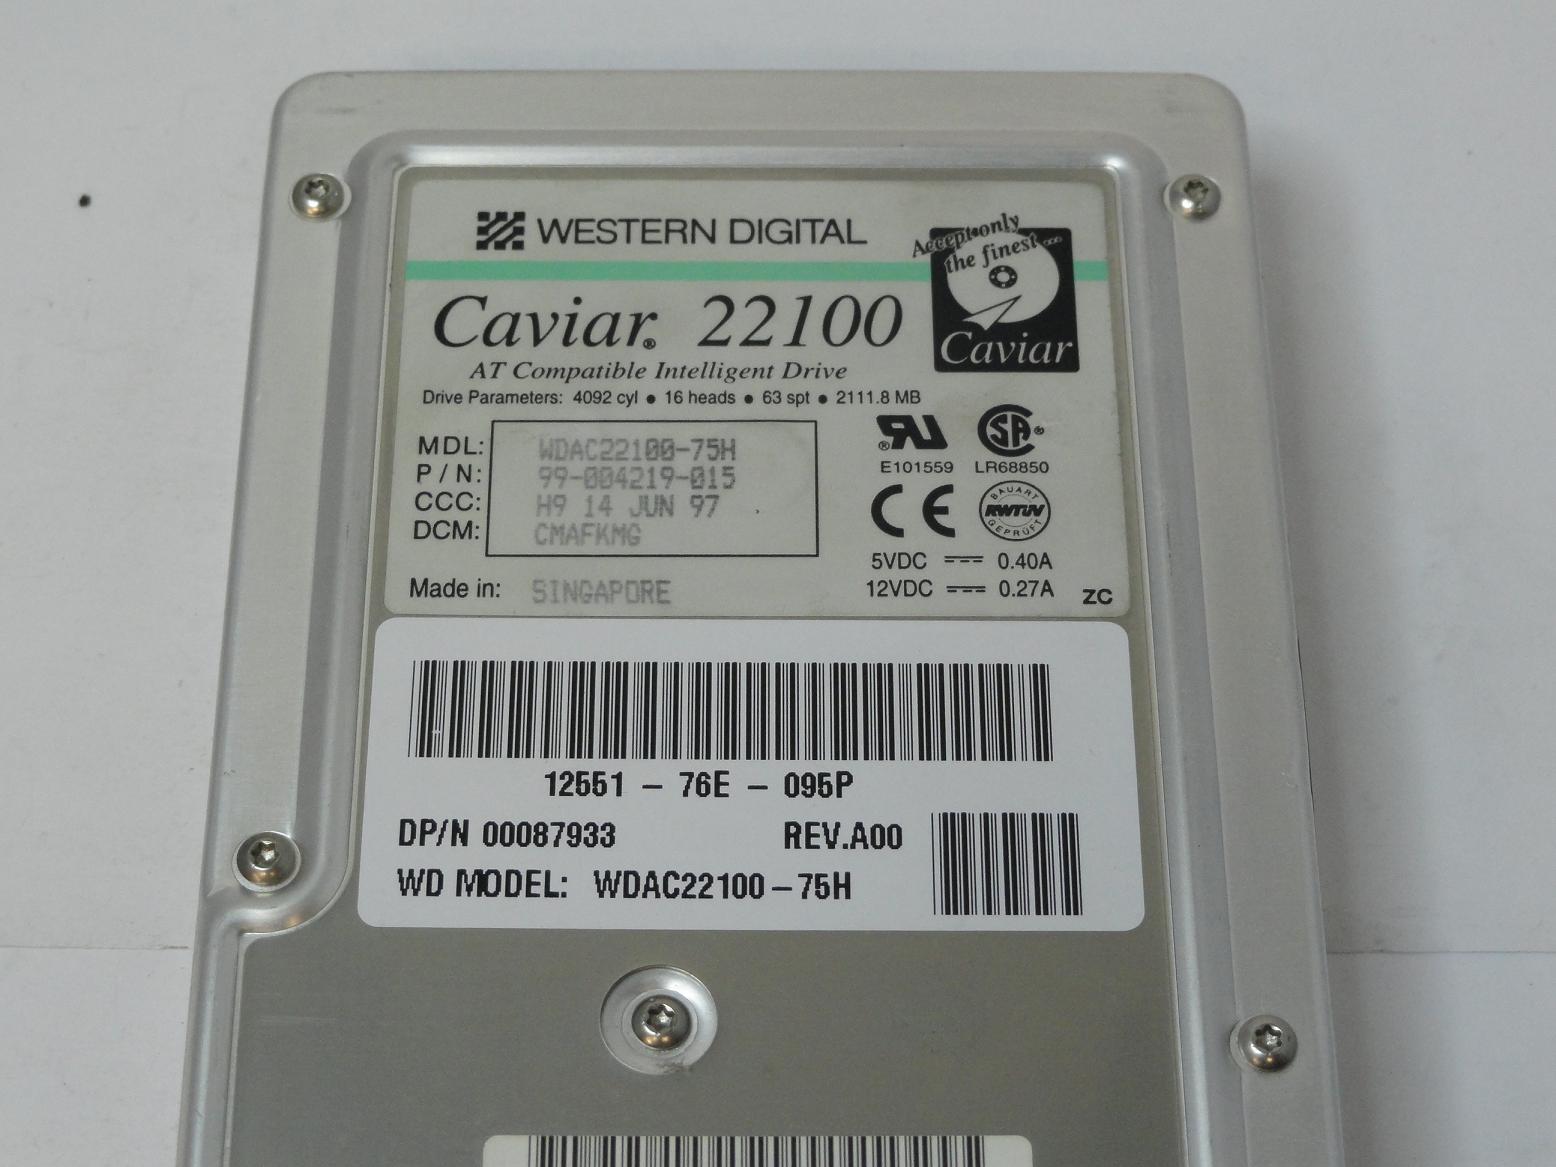 PR11927_99-004219-015_Western Digital Dell 2.1GB IDE 5400rpm 3.5in HDD - Image3